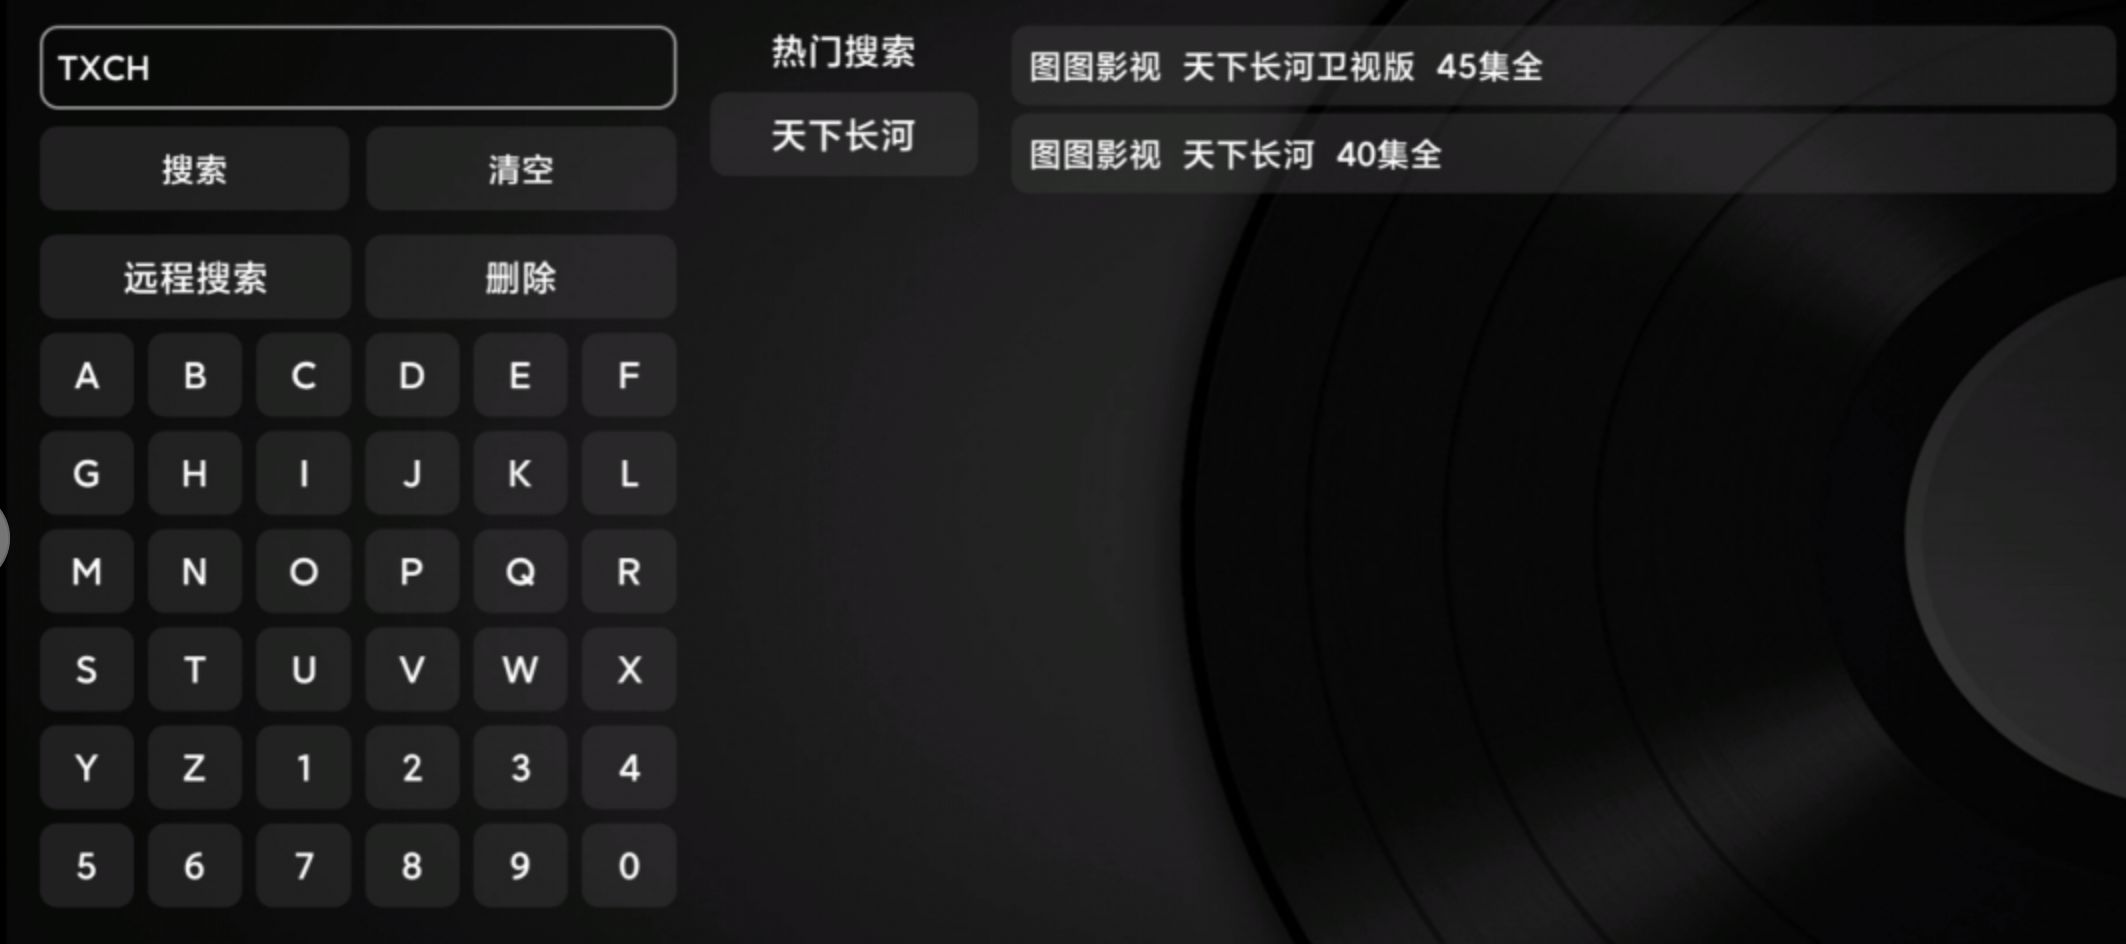 图图NewTV_1.0.0最新版，又一款TVBOX源码TV，无需授权，稳得一批！支持双端